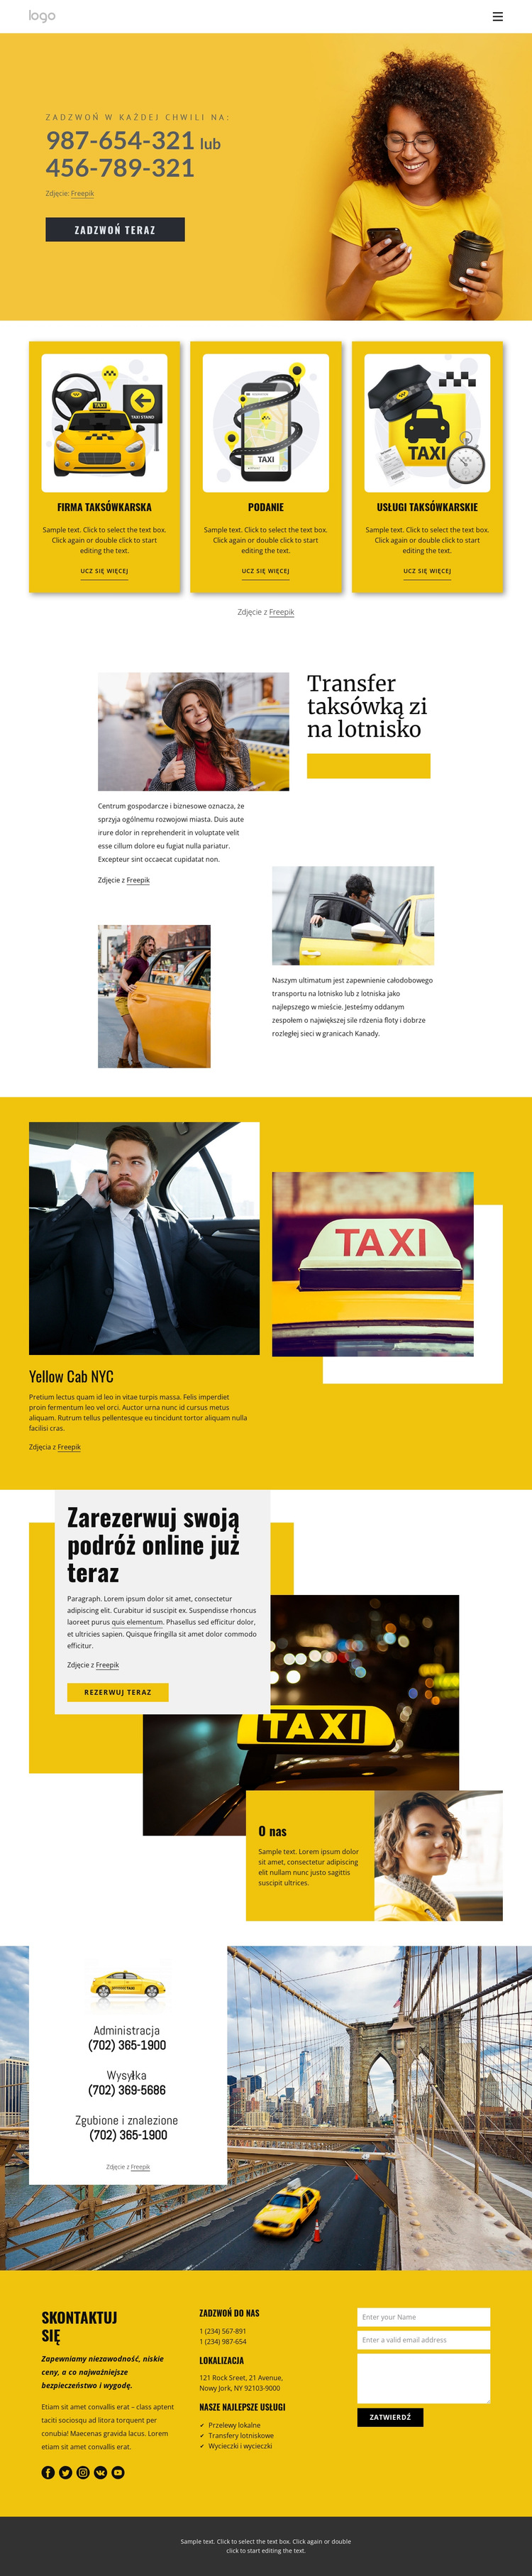 Jakość usług taksówkowych Szablon witryny sieci Web